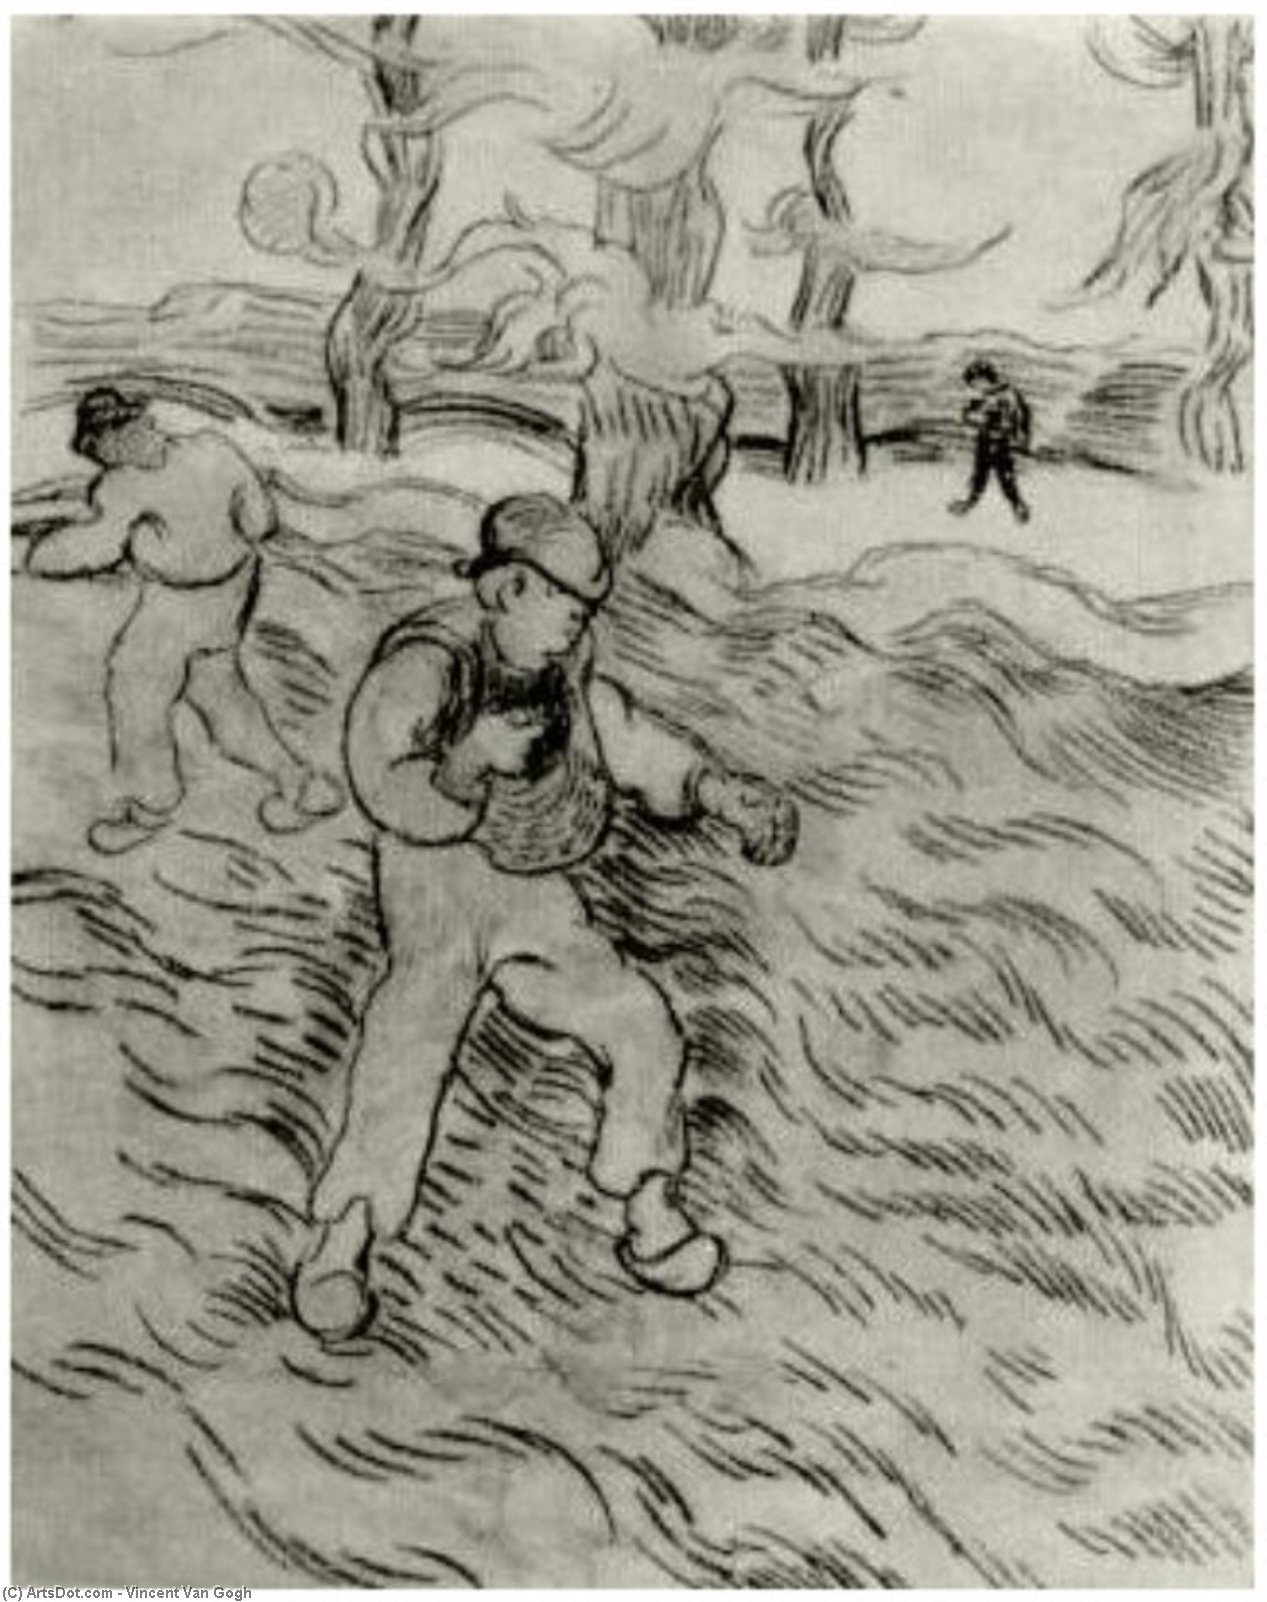 WikiOO.org - אנציקלופדיה לאמנויות יפות - ציור, יצירות אמנות Vincent Van Gogh - Field with Two Sowers and Trees